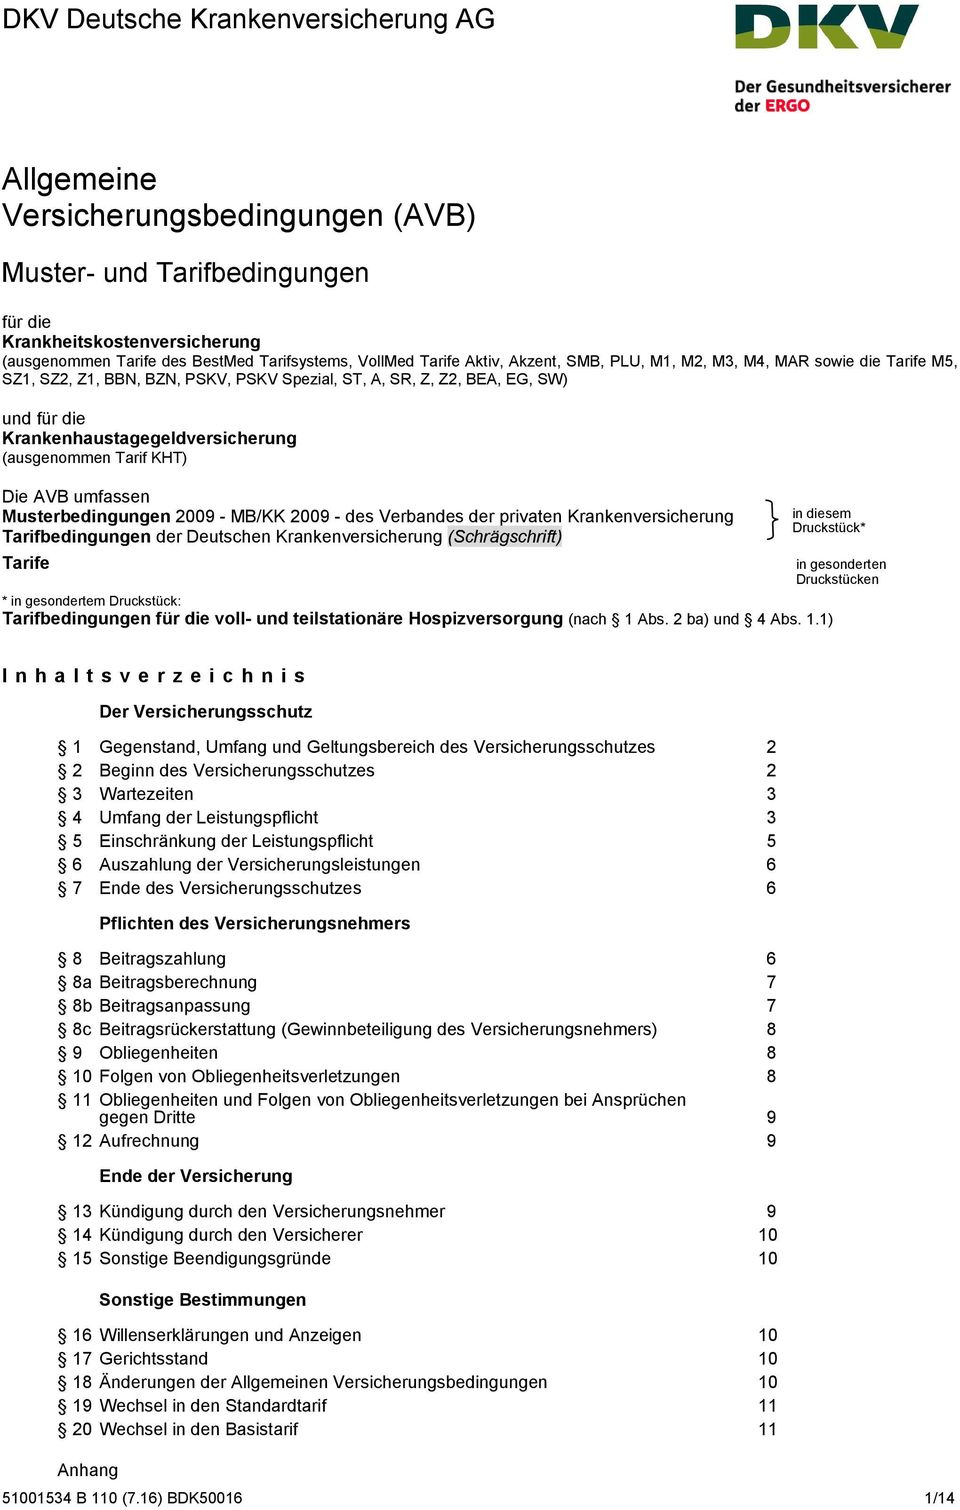 (ausgenommen Tarif KHT) Die AVB umfassen Musterbedingungen 2009 - MB/KK 2009 - des Verbandes der privaten Krankenversicherung Tarifbedingungen der Deutschen Krankenversicherung (Schrägschrift) Tarife